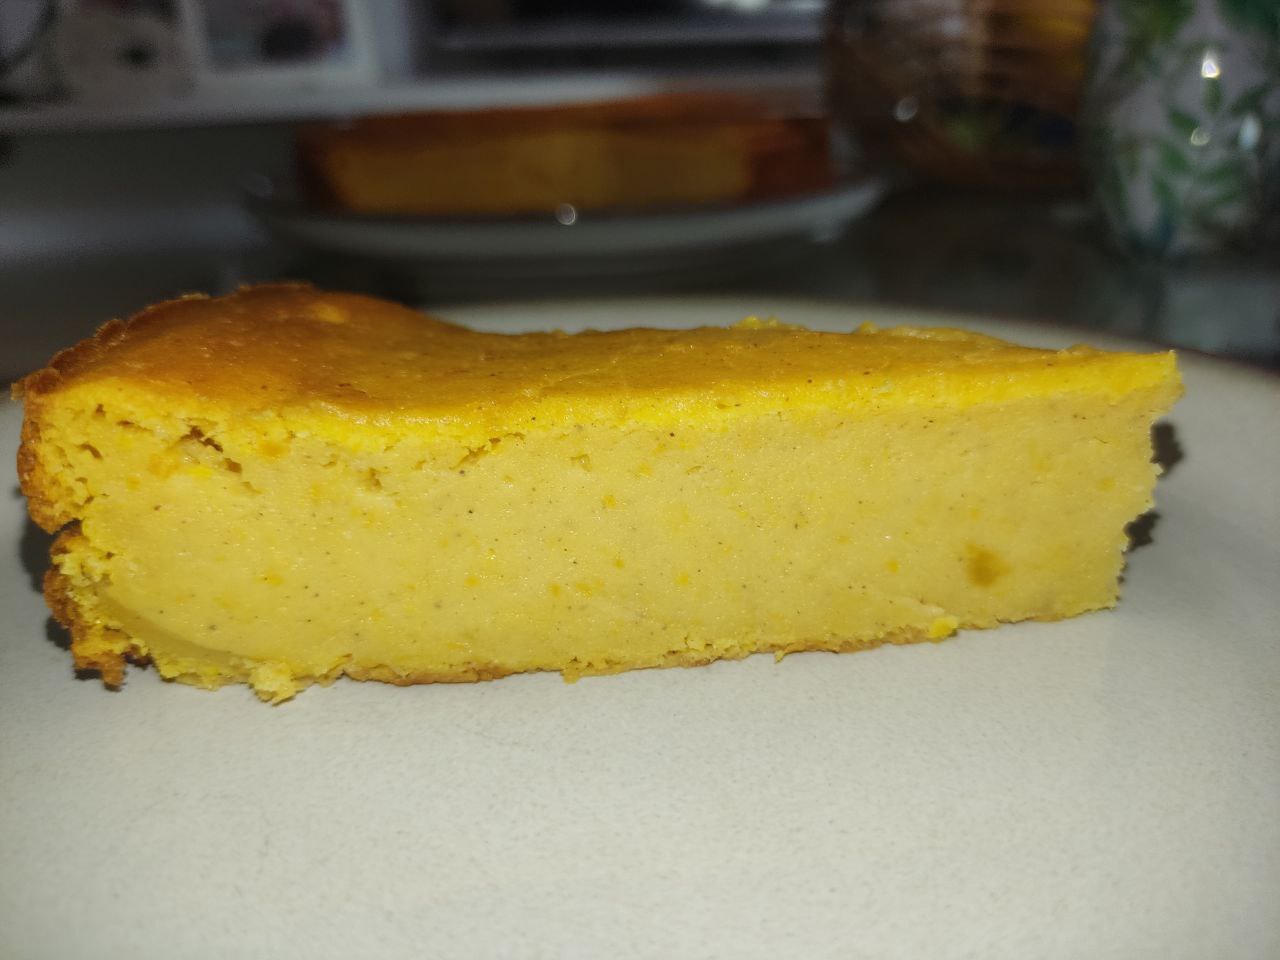 Deliciosa torta de auyama // Delicious pumpkin cake